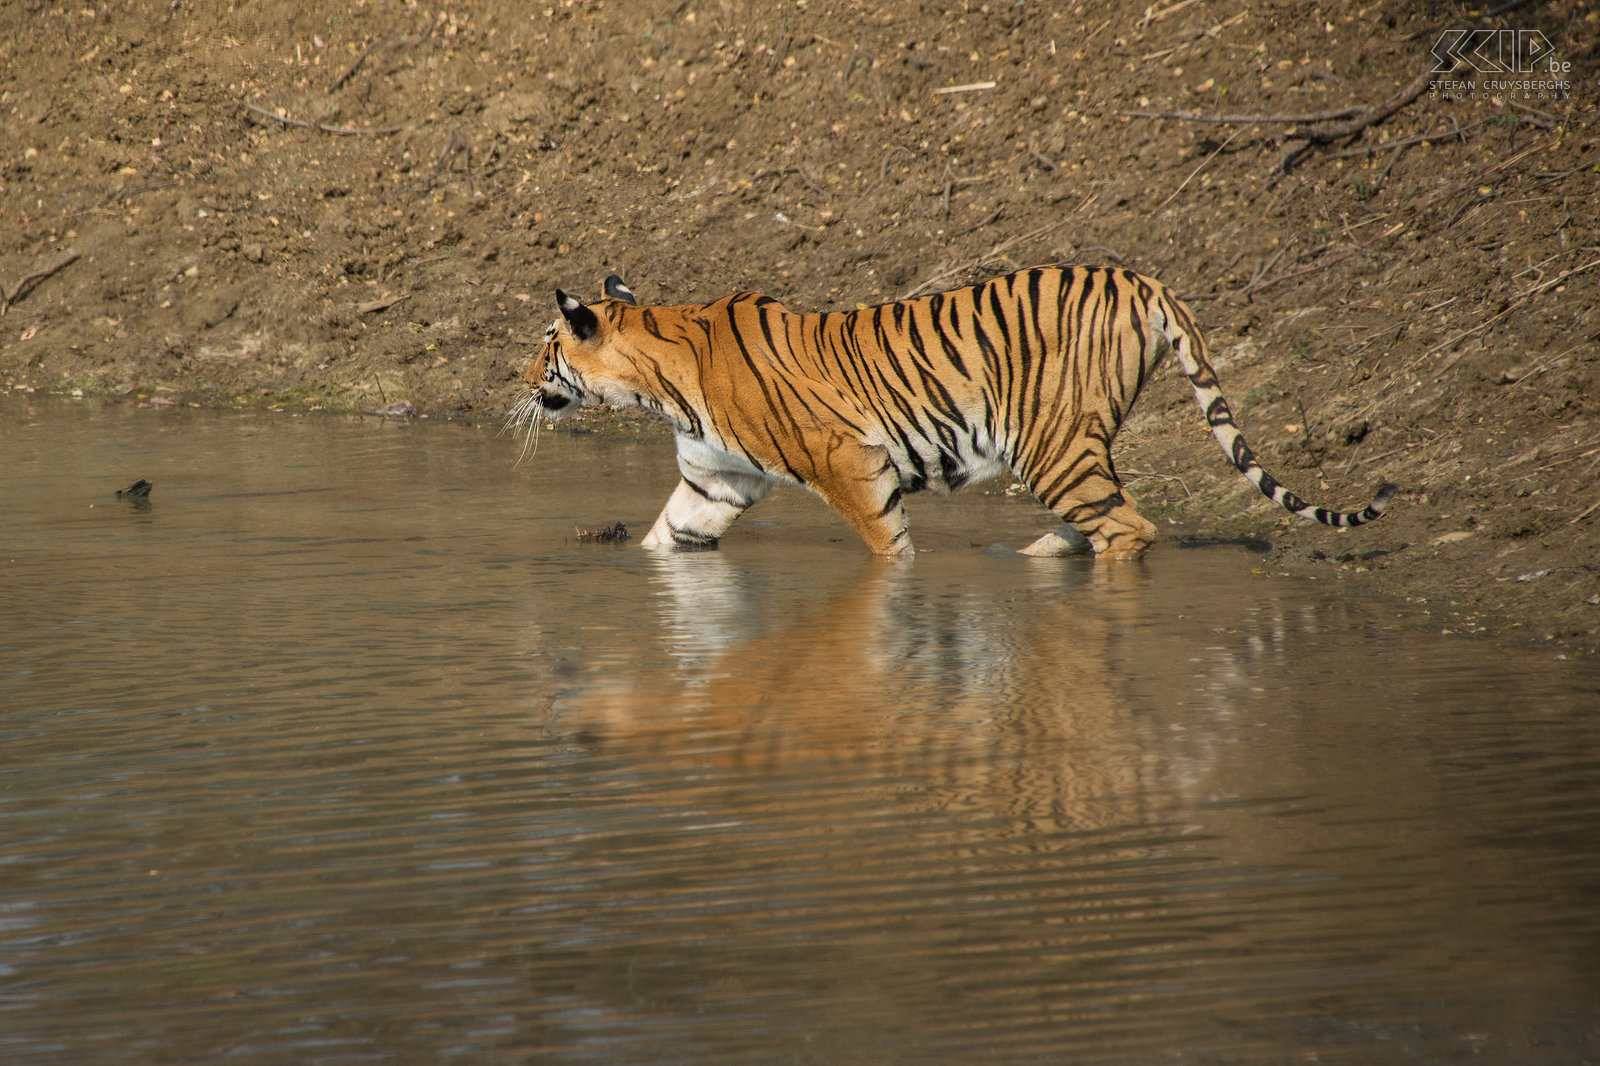 Tadoba - Tijgerin De tijgerin komt uit het hoge gras en sluipt stilletjes het water in. Stefan Cruysberghs